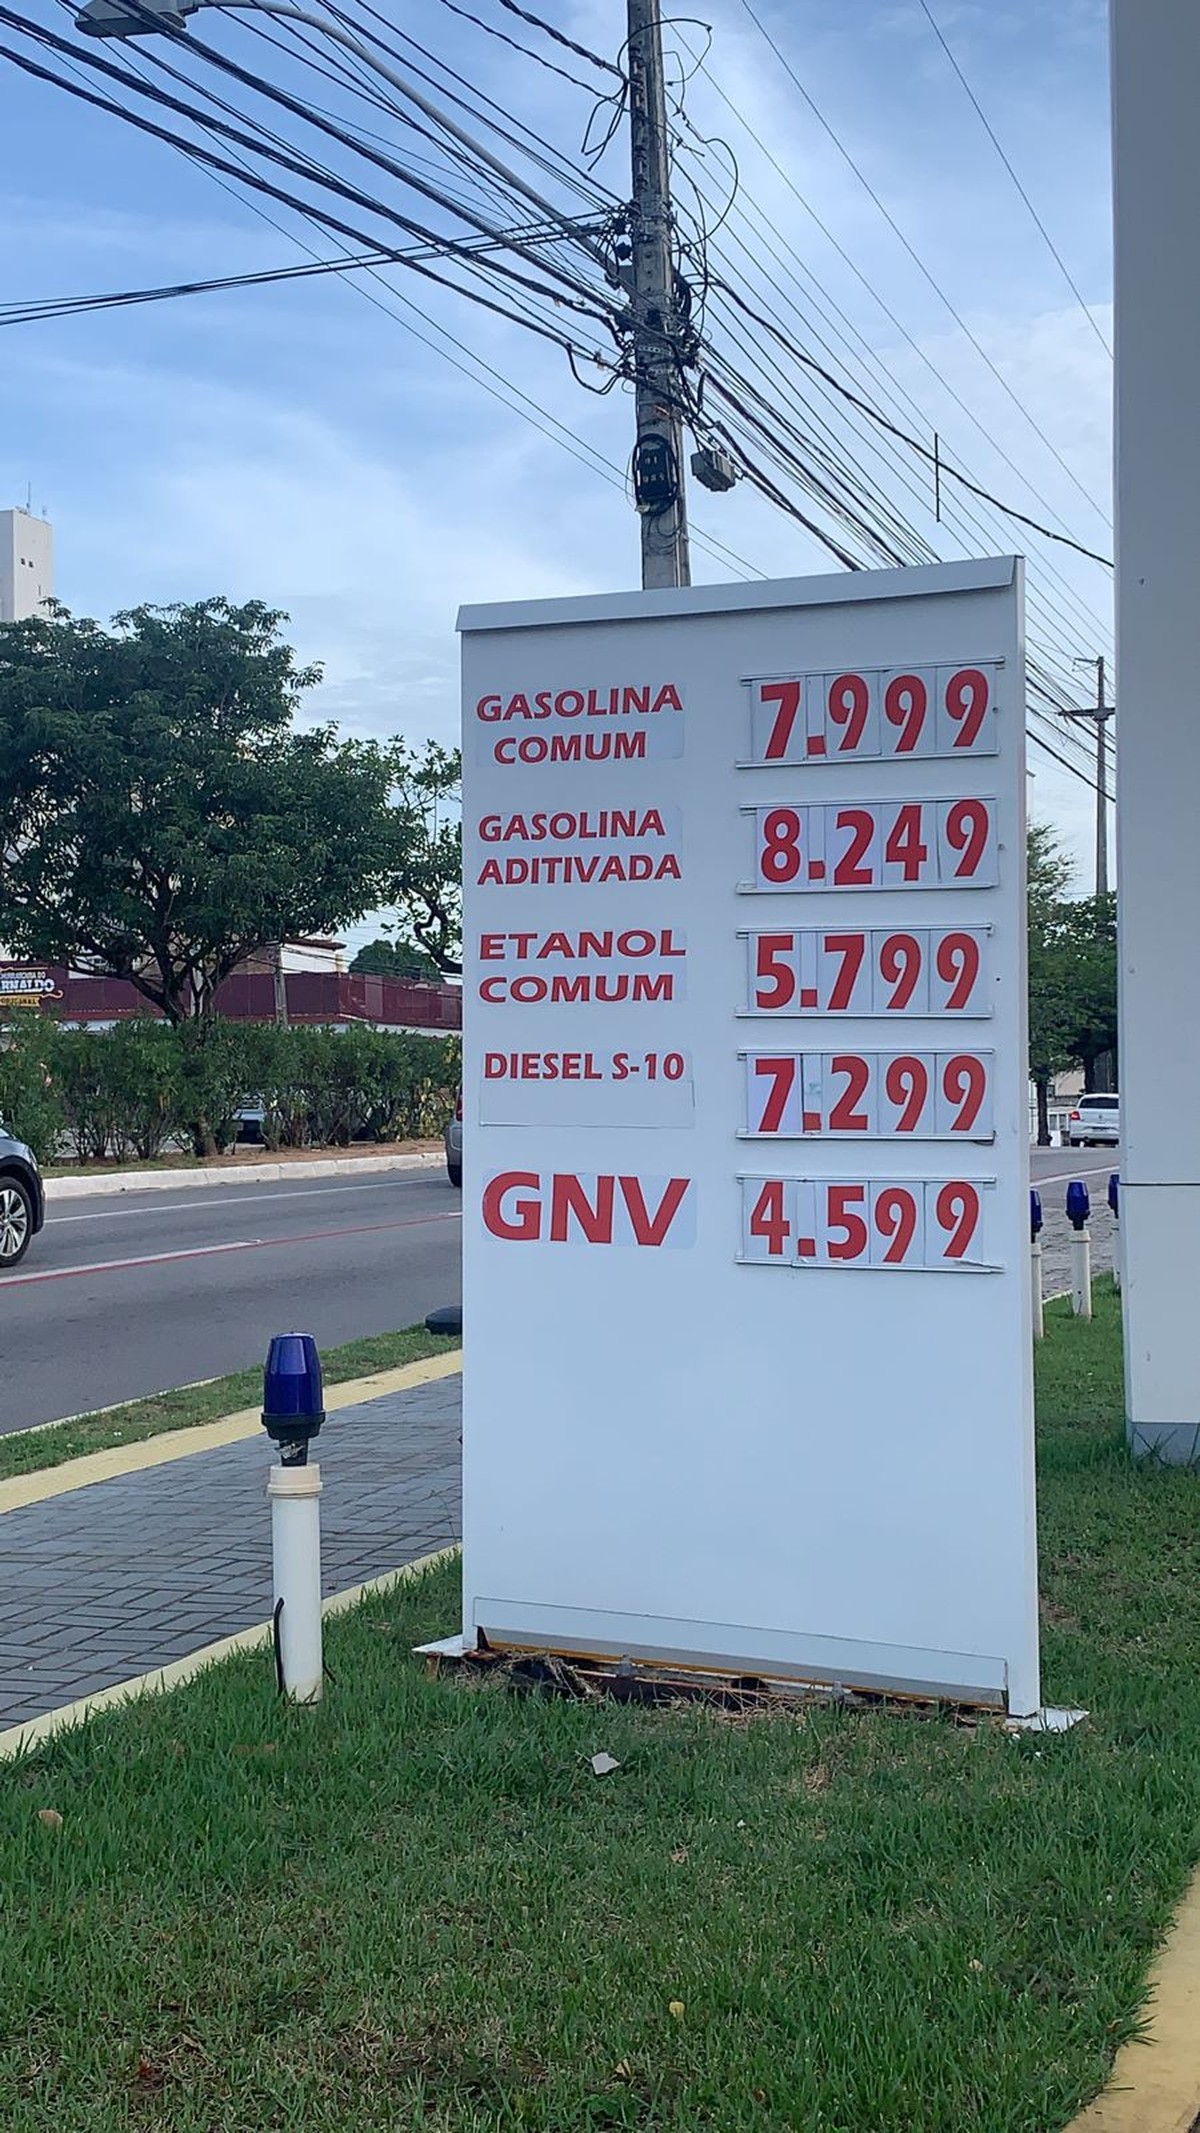 Preço da gasolina chega a quase R$ 8 em postos de combustíveis de Natal  após reajuste da Petrobras | Rio Grande do Norte | G1